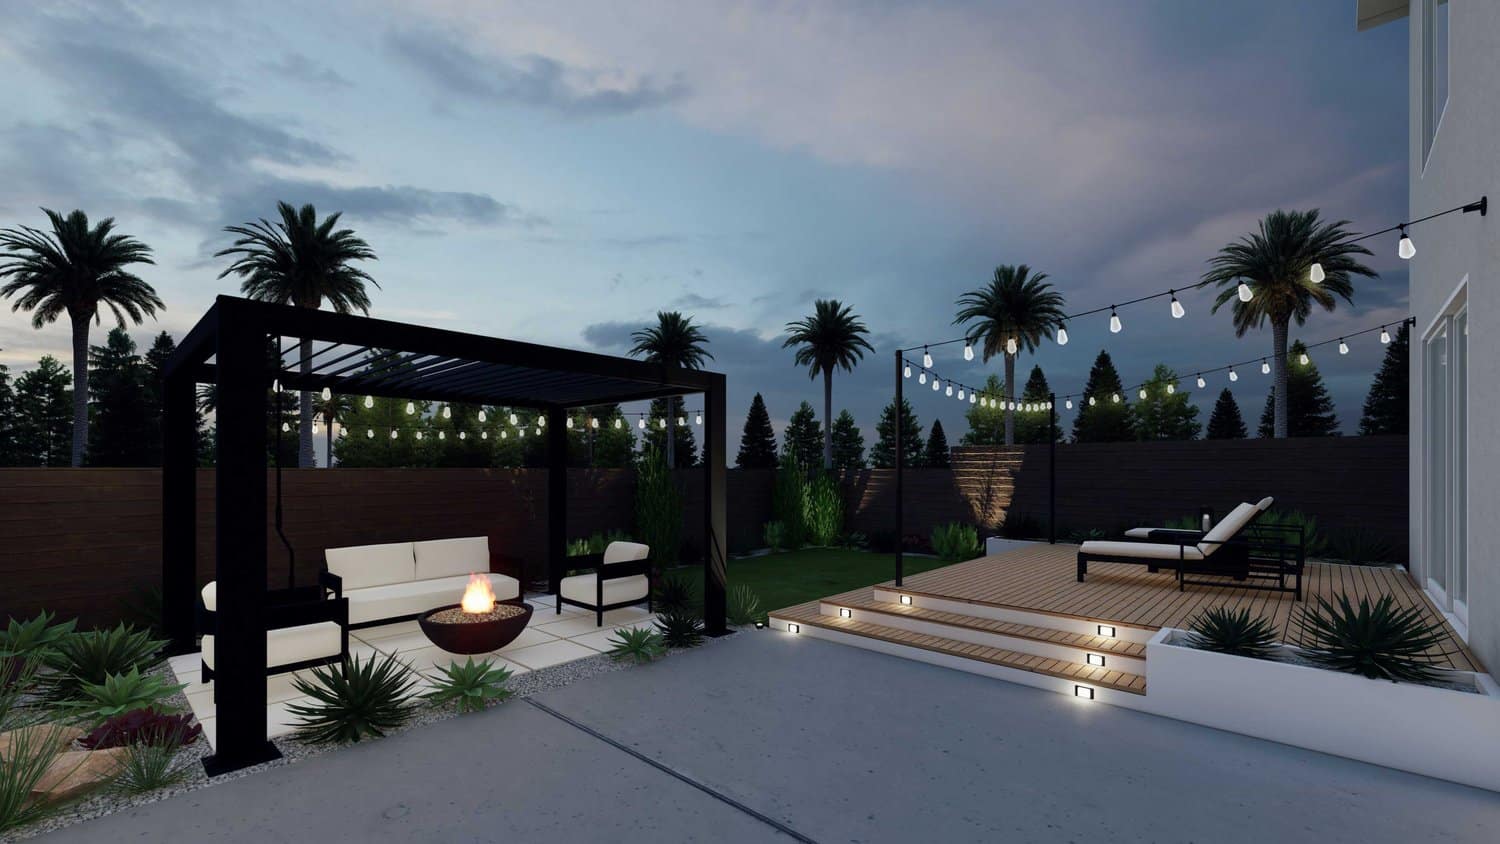 洛杉矶完整的后院显示摊铺机露台和藤架休息区，火坑，植物和草，砾石，混凝土地板和甲板与串灯